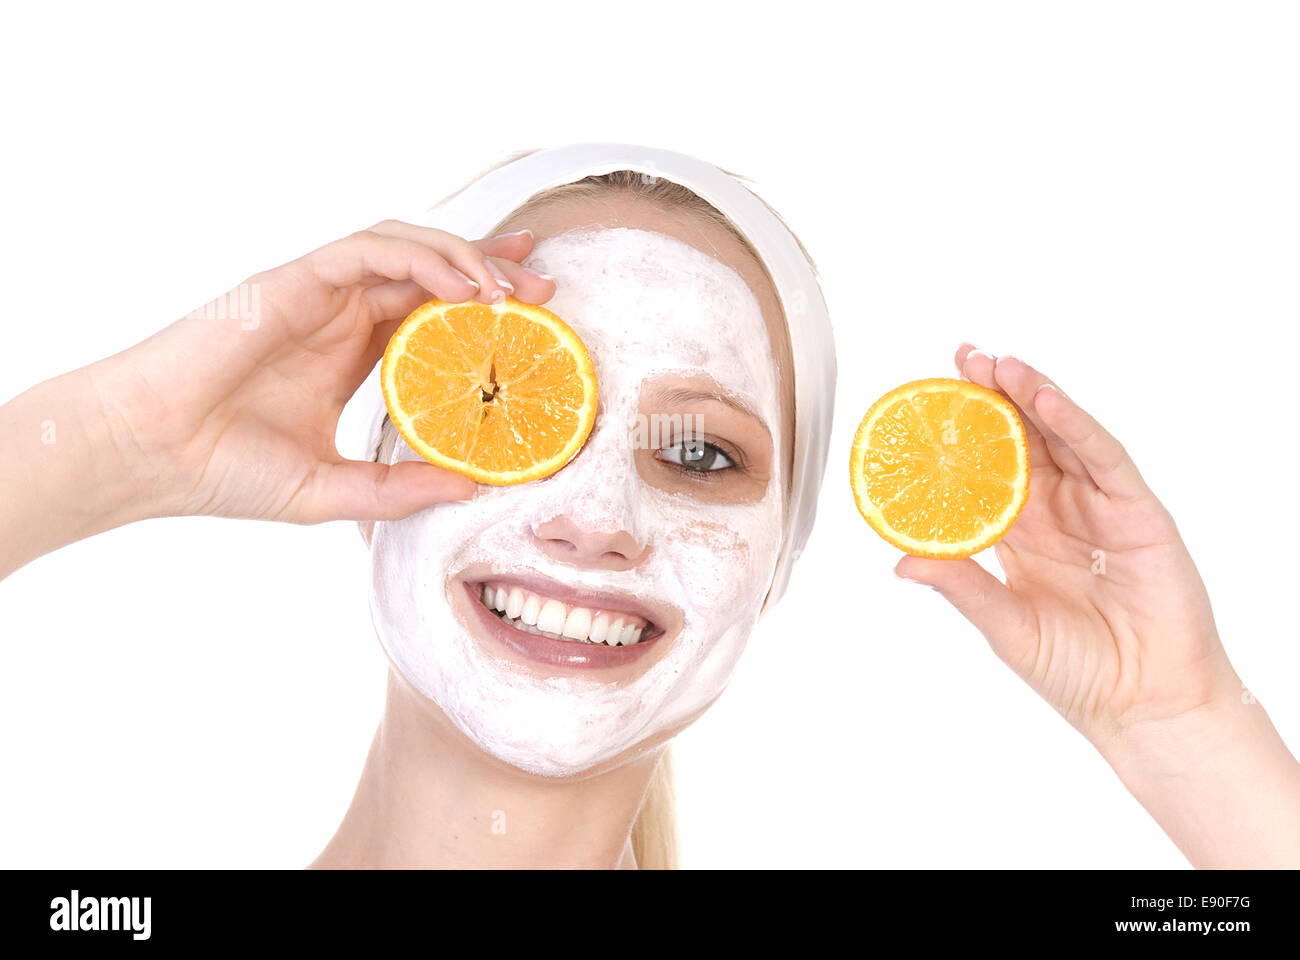 Маски от морщин с витаминами. Фруктовые маски для лица. Маска из цитрусовых. Апельсиновая маска для лица. Маска из апельсина для лица.